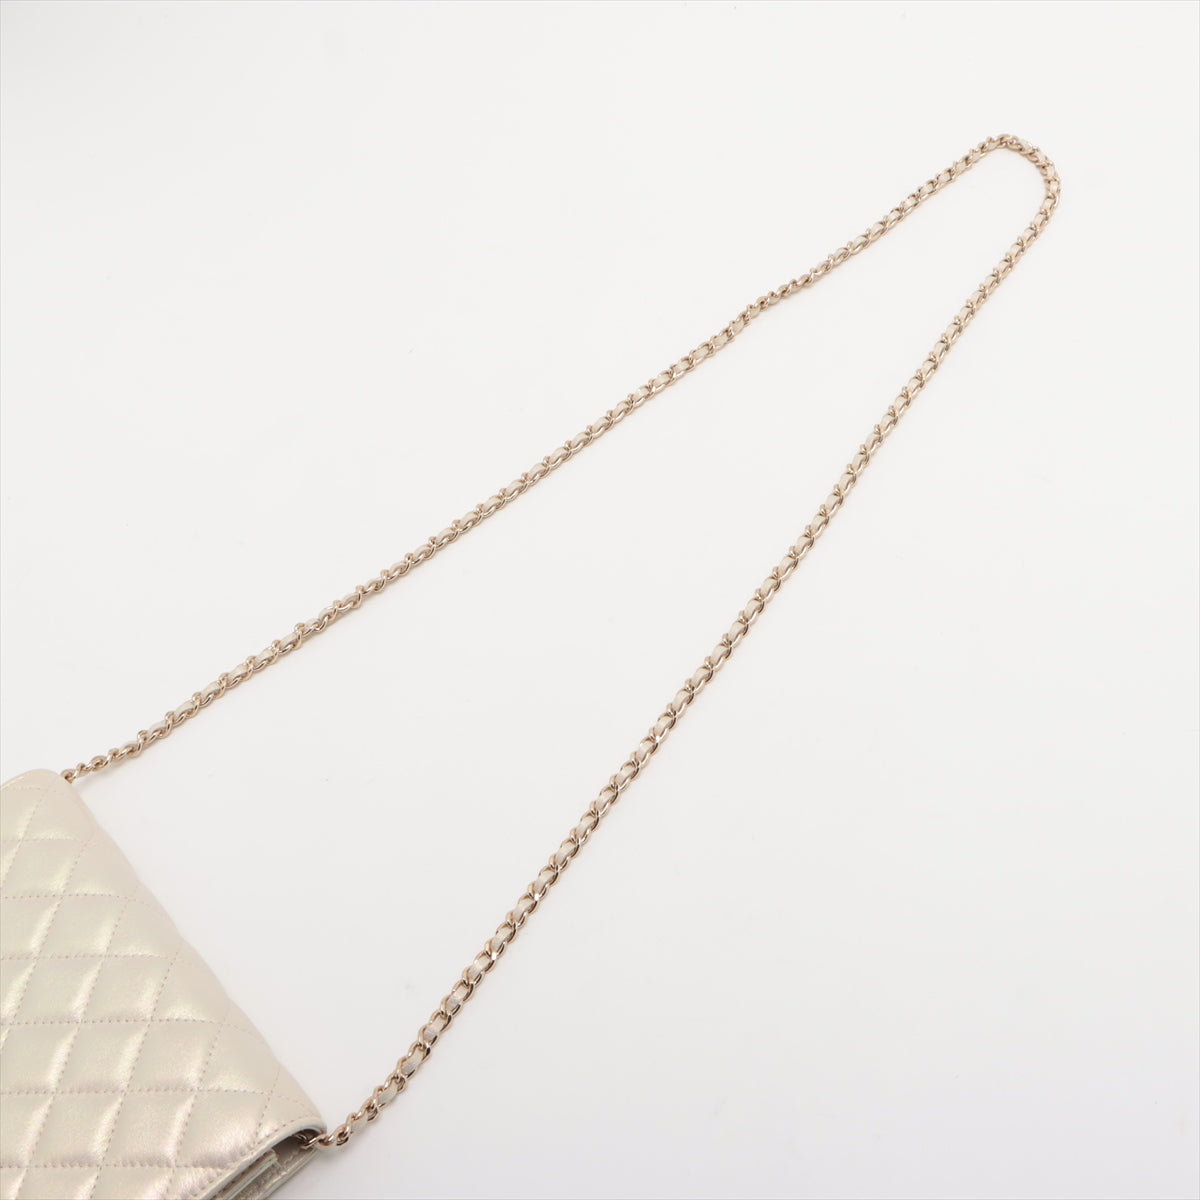 Chanel Matelasse Lambskin Chain wallet Pearl Gold Metal fittings 30